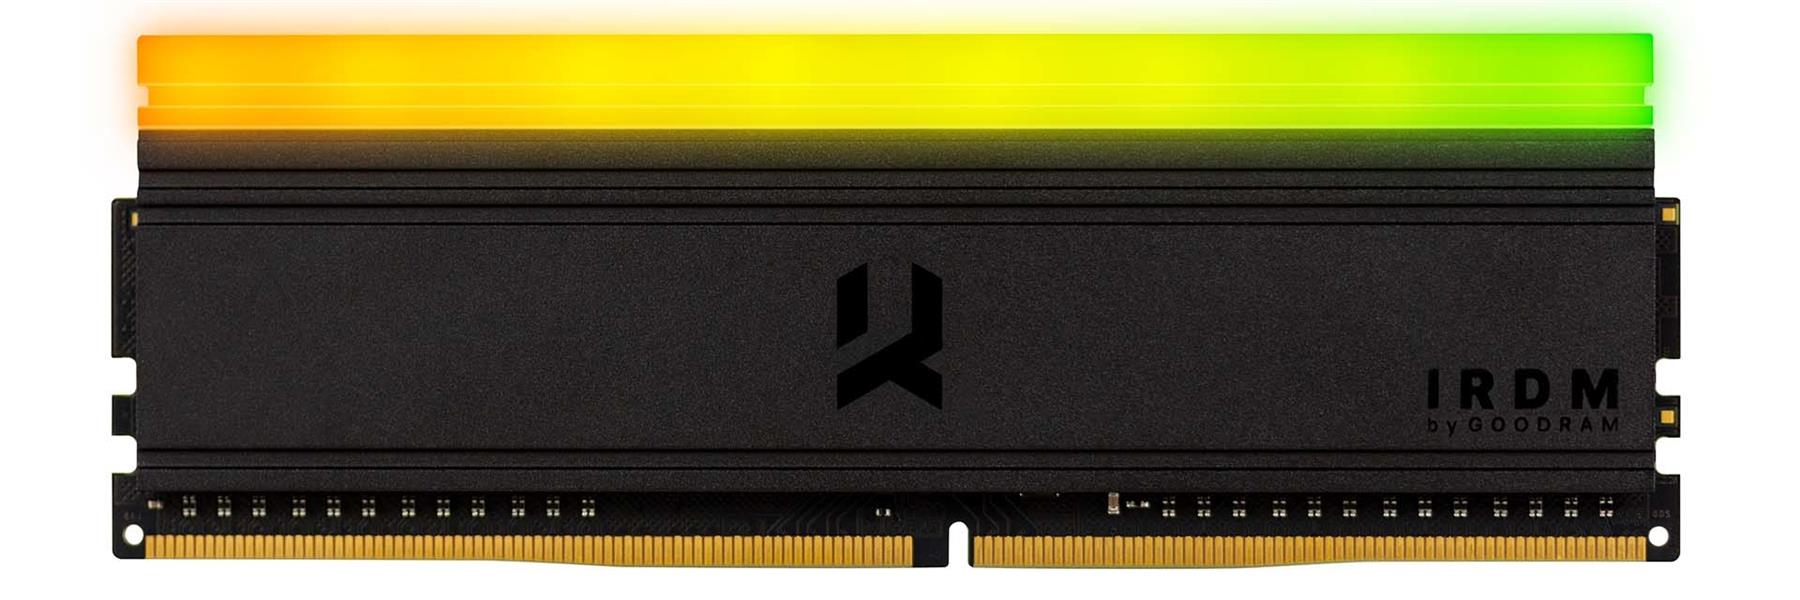 GoodRAM IRDM ARGB UDIMM DDR4 KIT 16 GB 2 x 8GB PC4-28800 3600MHz CL18 18-22-22 SR